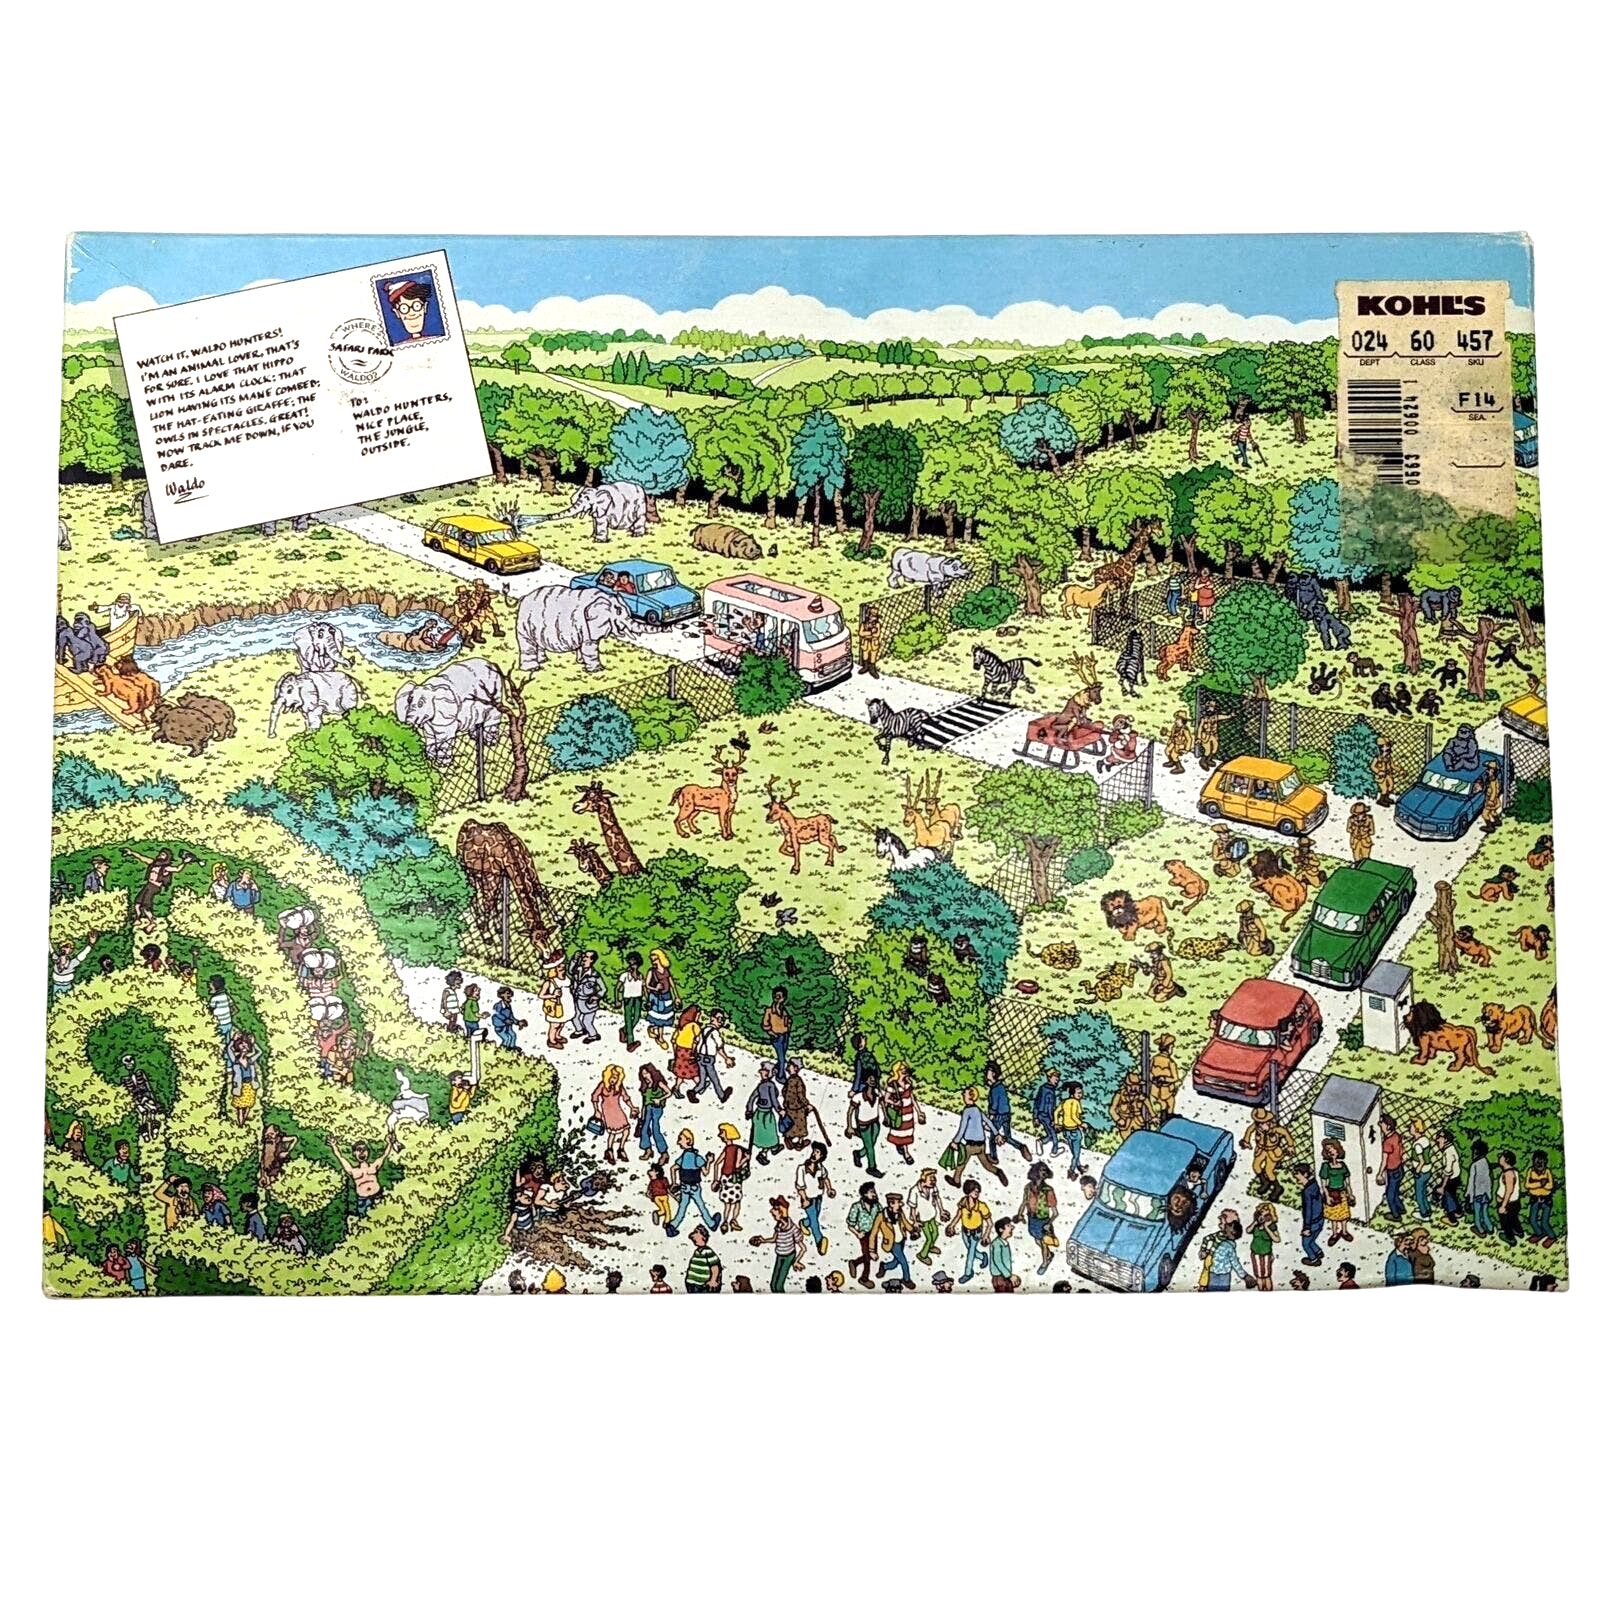 Where's Waldo Safari Park 100 Pc Puzzle 11.5x6.25" - Used (Great American, 1989) - $9.89